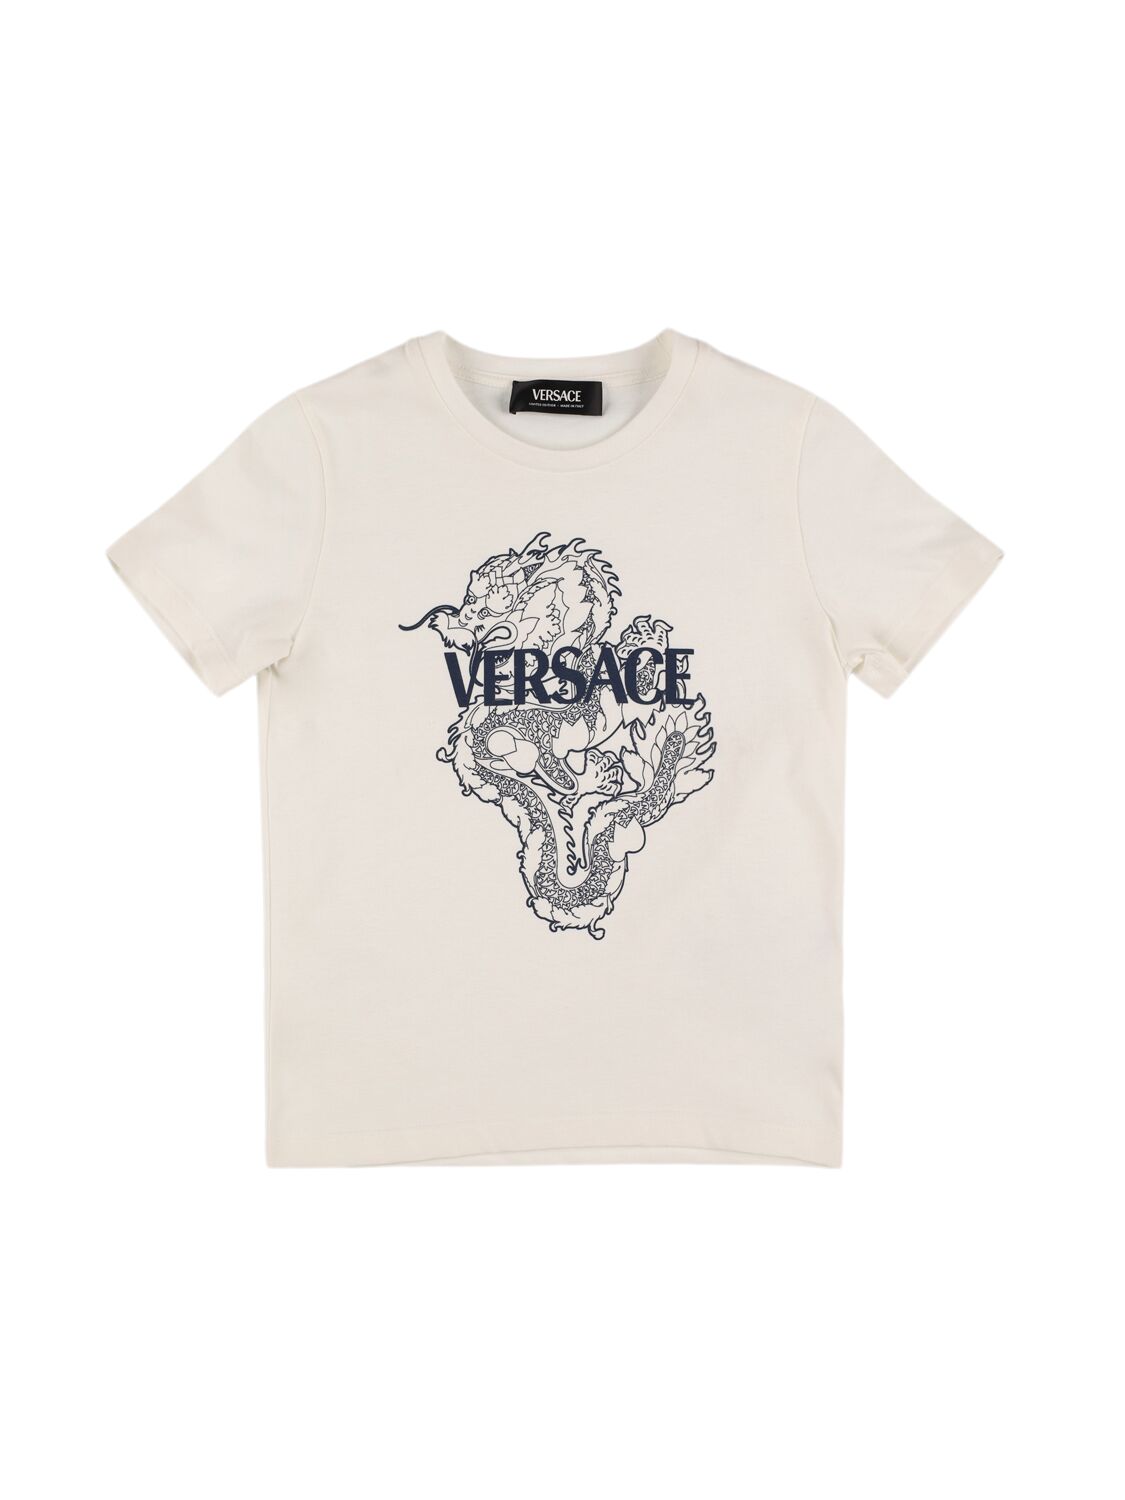 Versace Kids' Dragan Printed Cotton Jersey T-shirt In White